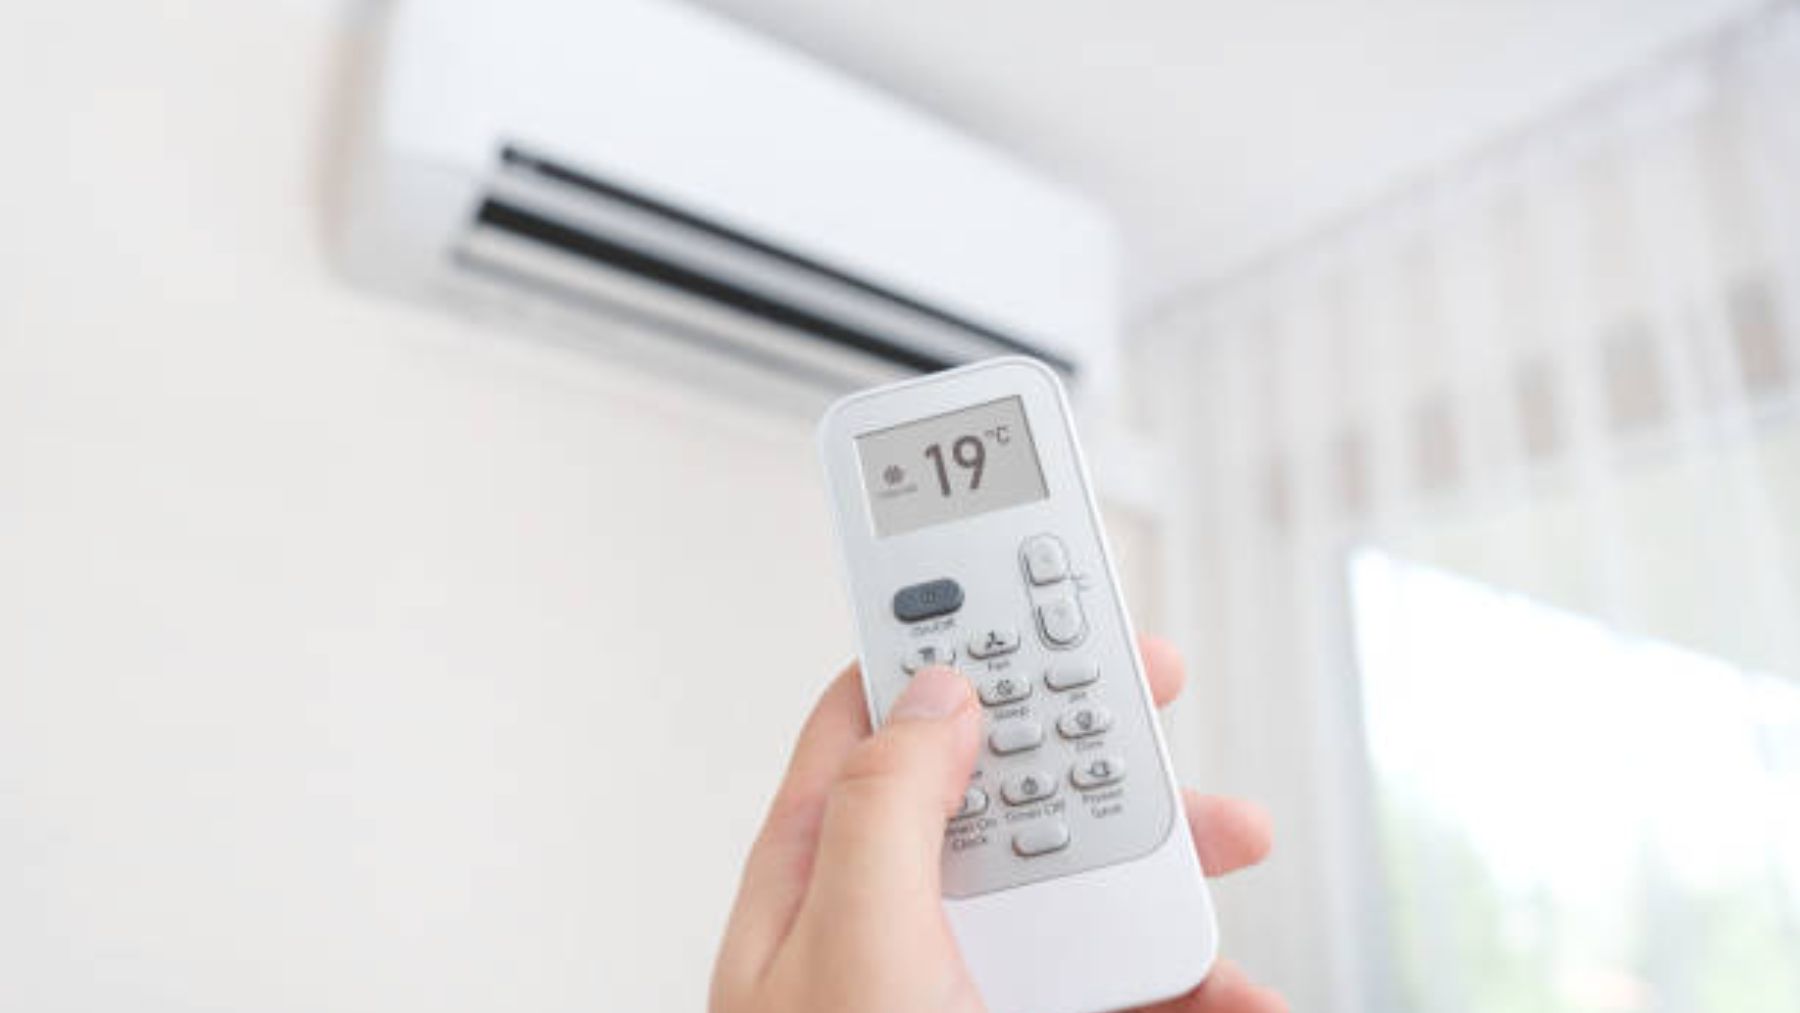 Modo heat del aire acondicionado: la mejor forma de calentar tu hogar -  Blog de PcComponentes